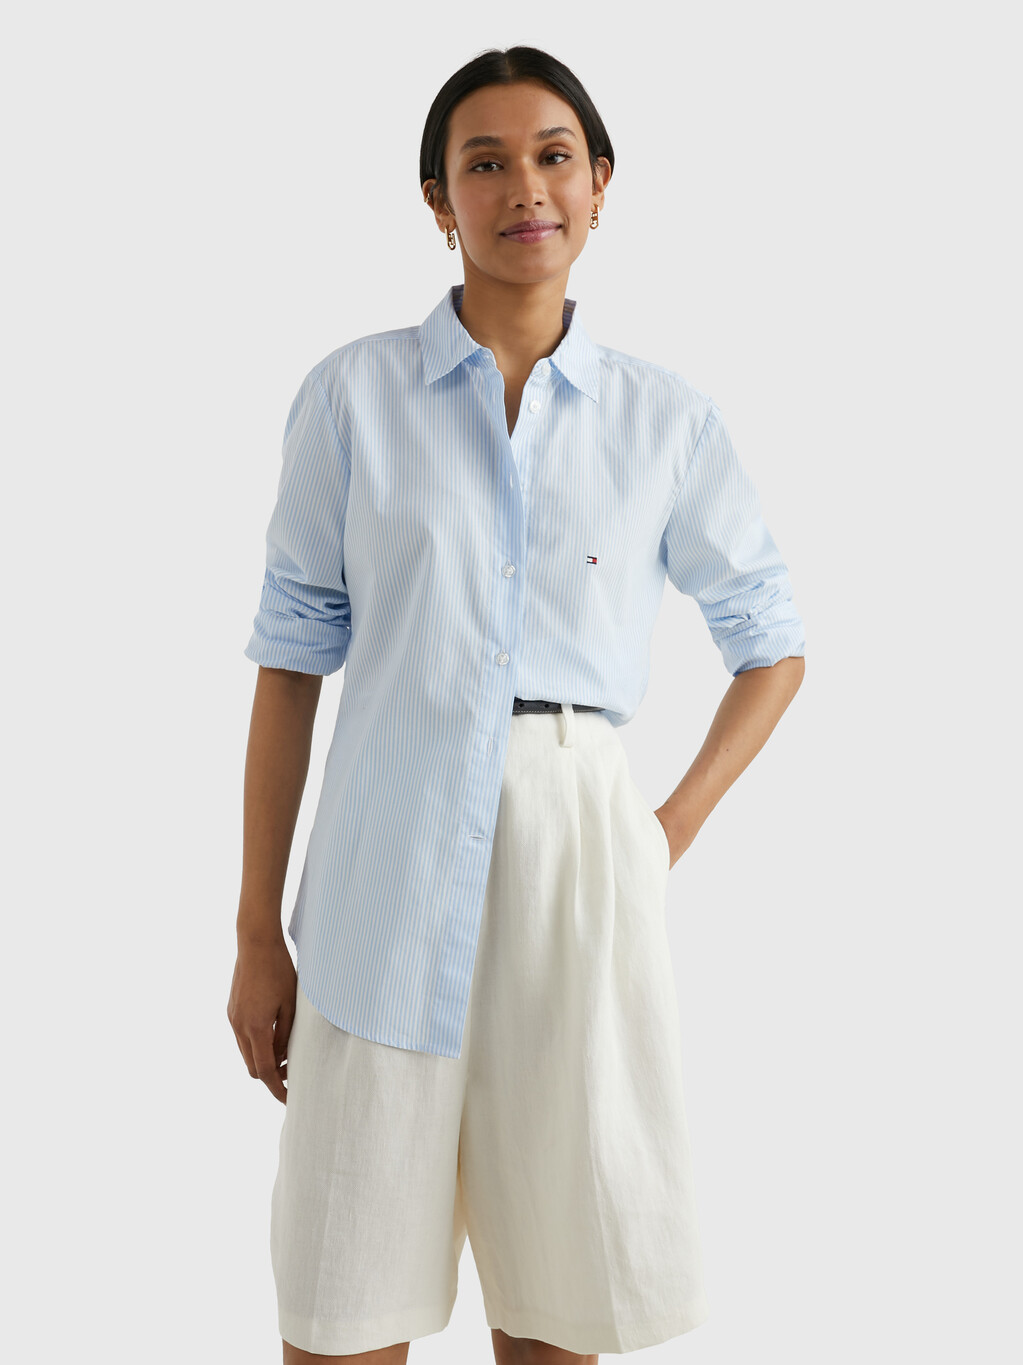 伊薩卡條紋標準版型裇衫, Ithaca Stp/ Blue, hi-res